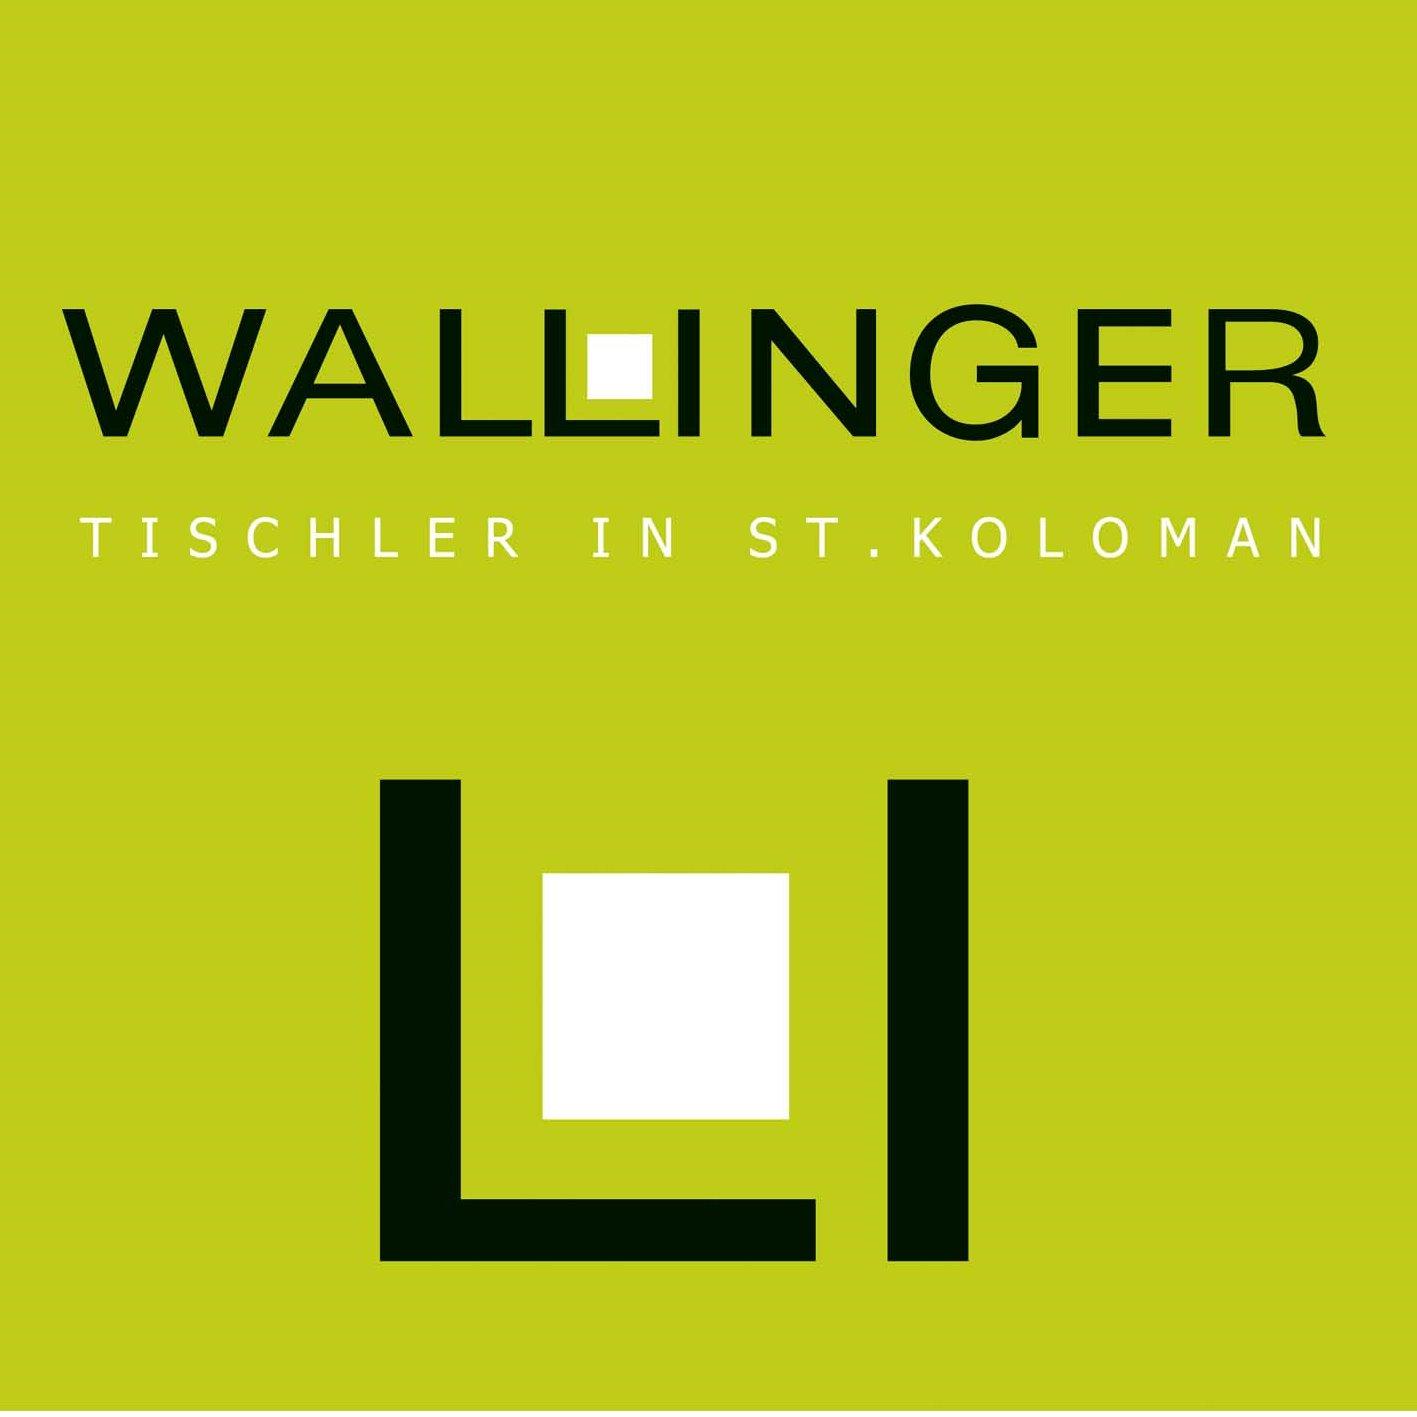 Wallinger Tischlerei GmbH in 5423 Sankt Koloman Logo